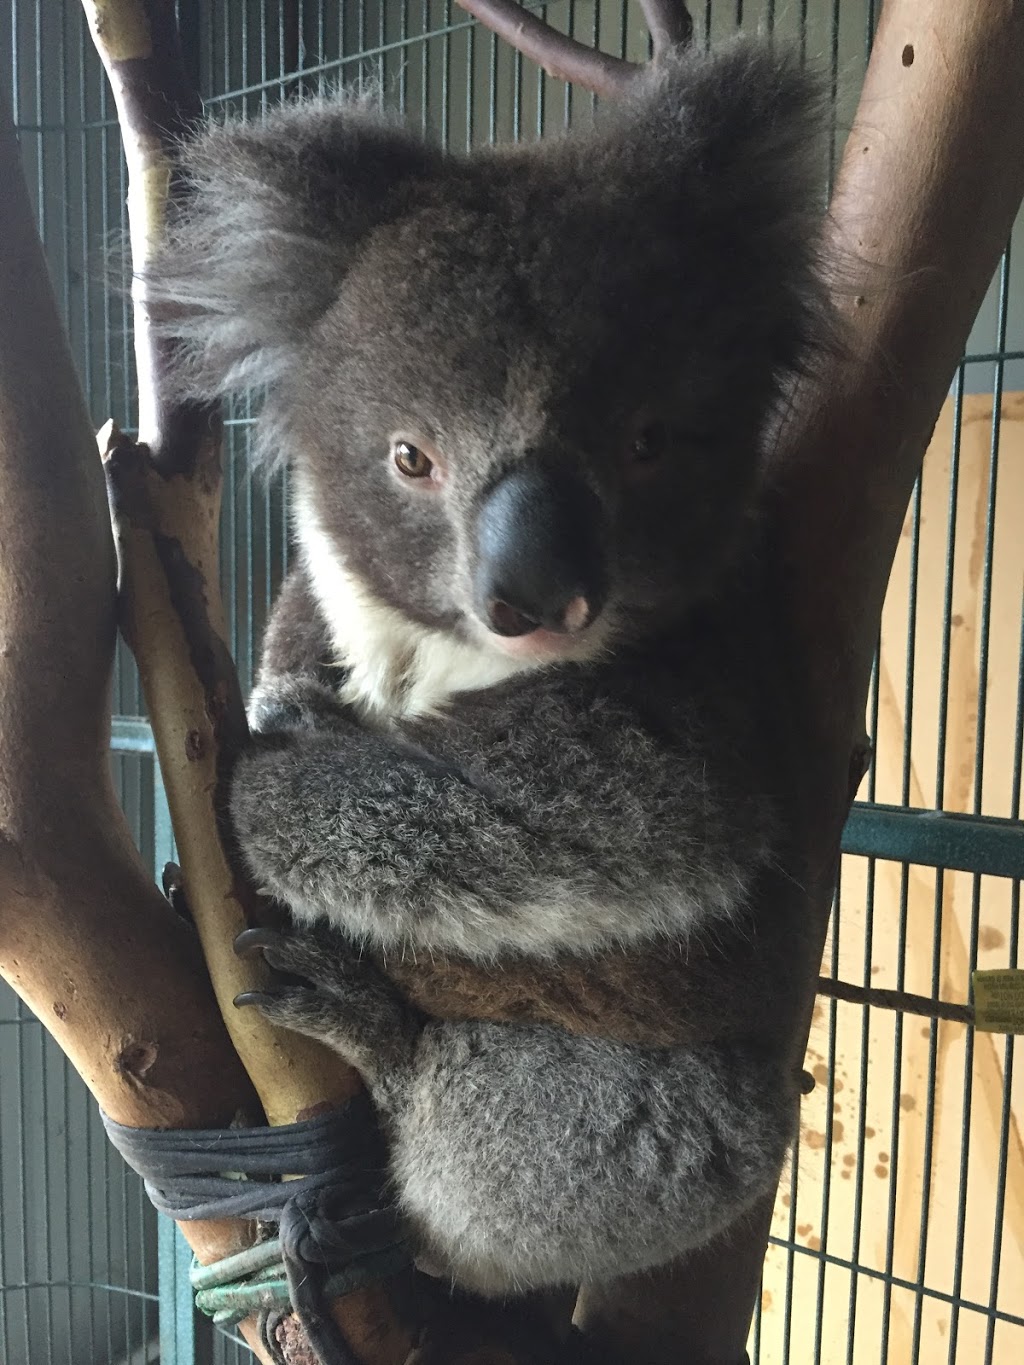 Adelaide and Hills Koala Rescue - 1300KOALAZ Inc |  | Bowen Rd, Tea Tree Gully SA 5091, Australia | 1300562529 OR +61 1300 562 529